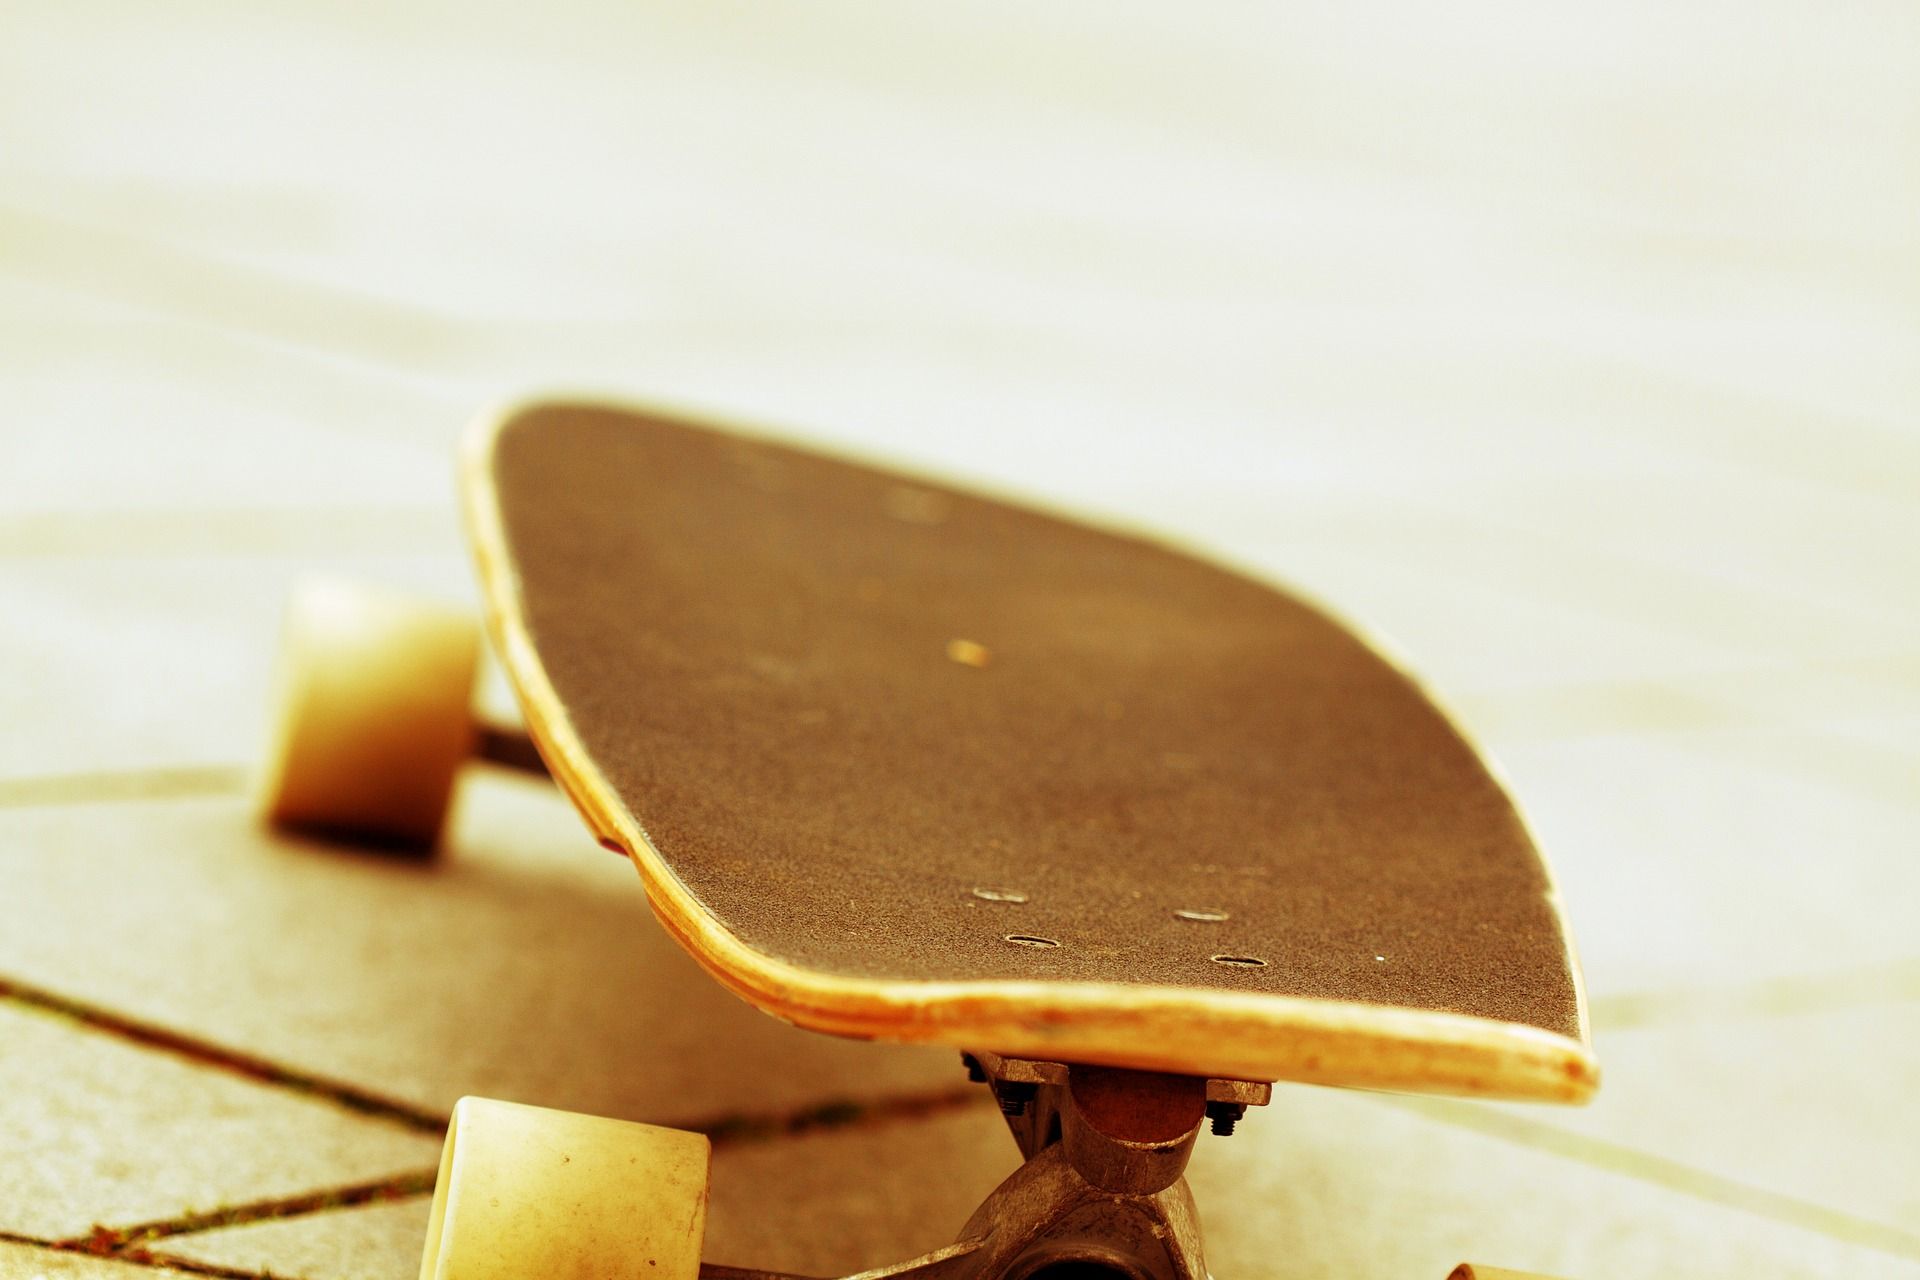 La sedia realizzata con un vecchio skateboard